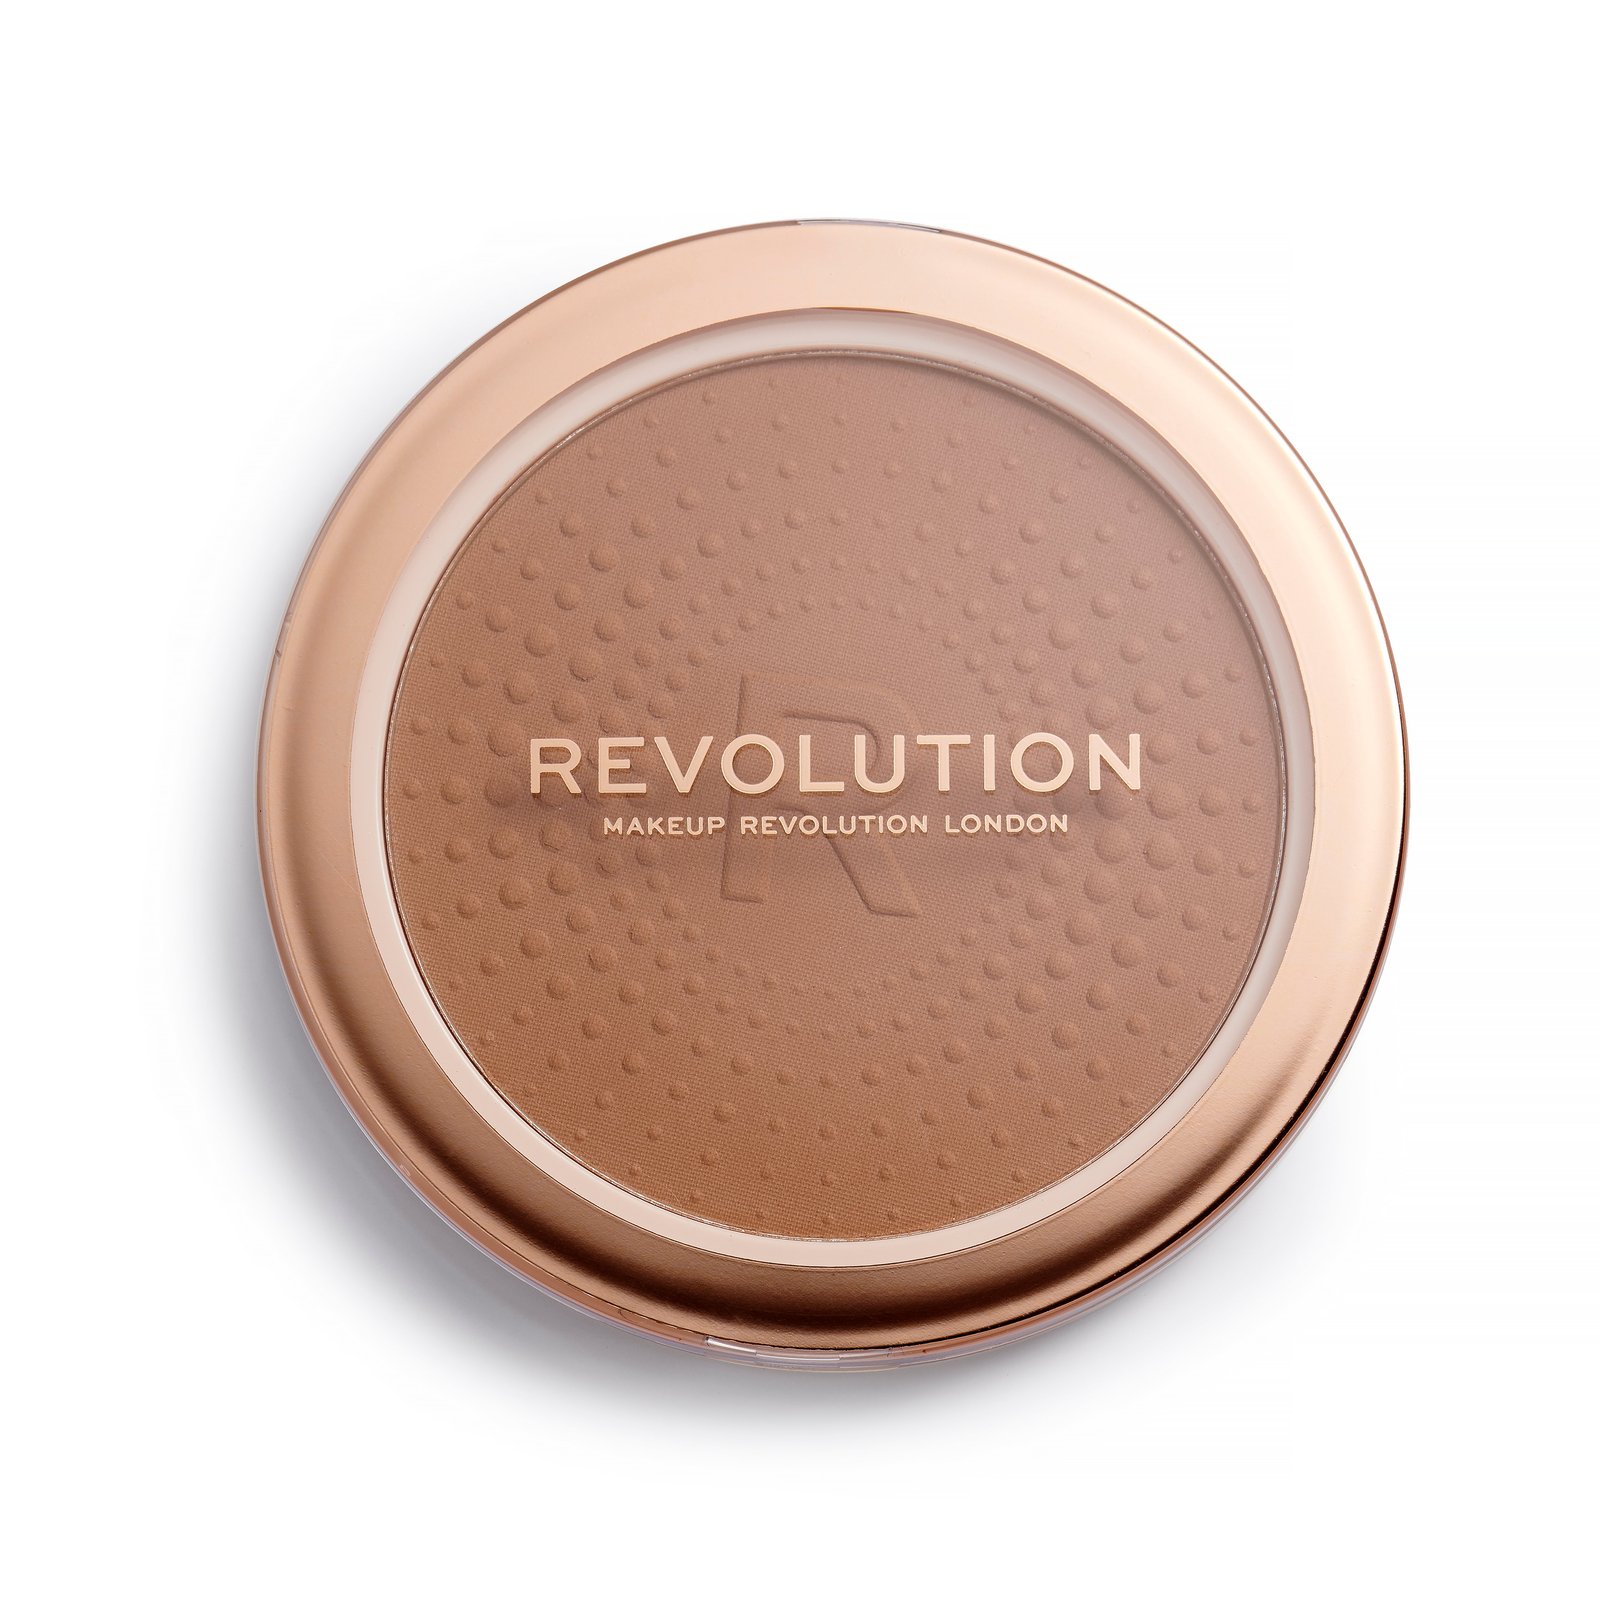 Makeup Revolution Mega Bronzer 02 - Warm 15g